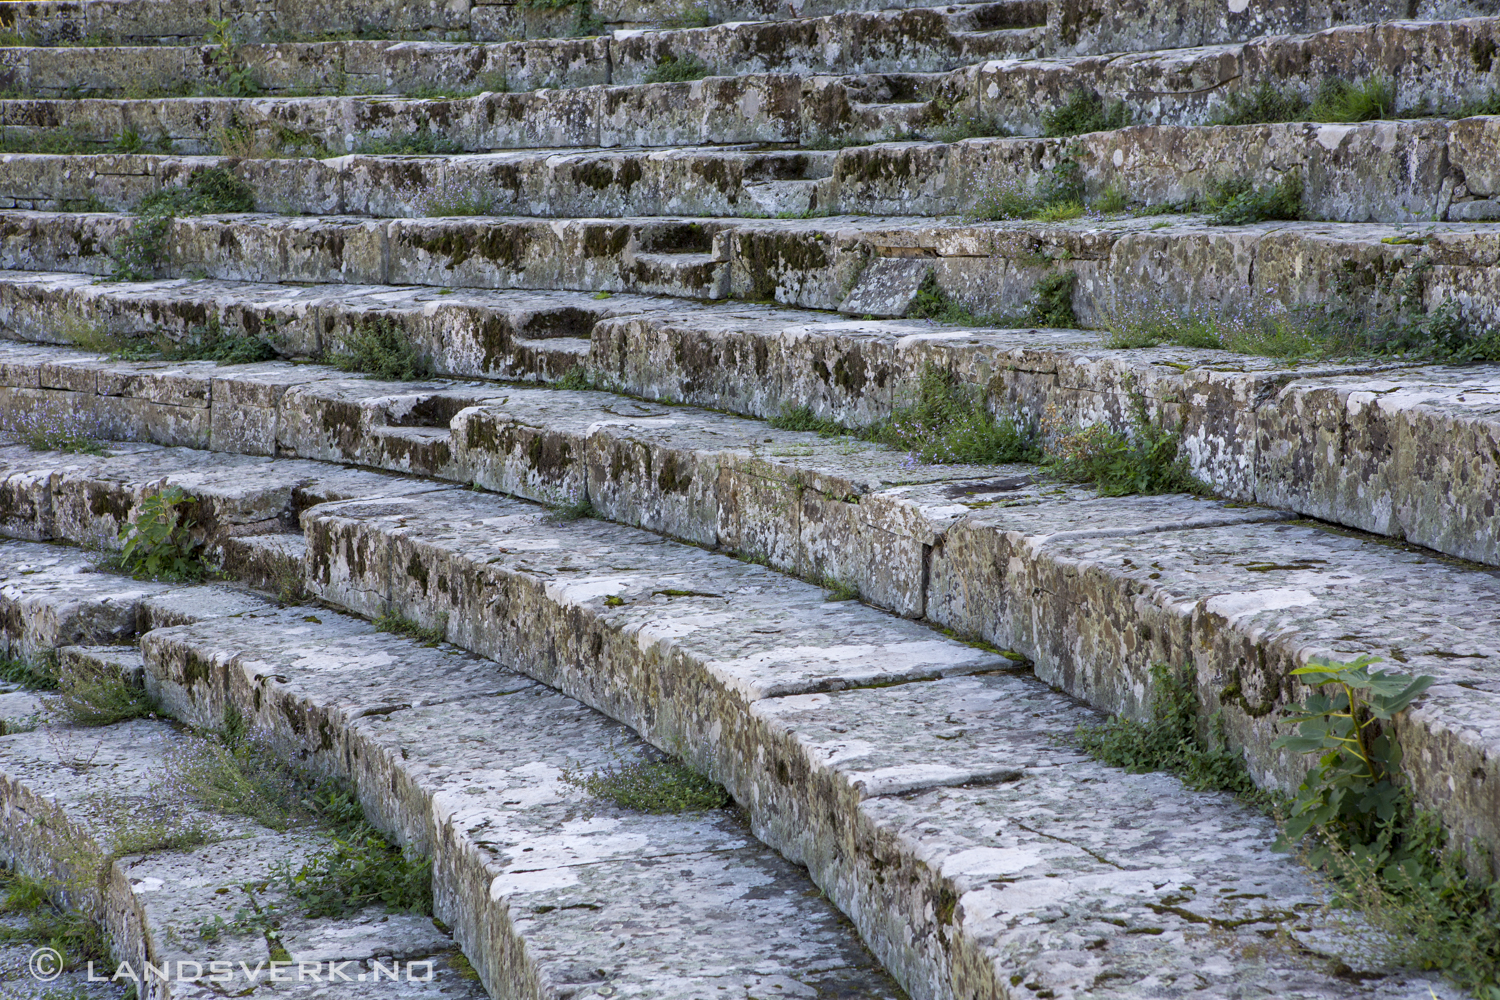 Anfiteatro Romano, Fiesole, Italy. 

(Canon EOS 5D Mark III / Canon EF 24-70mm f/2.8 L USM)